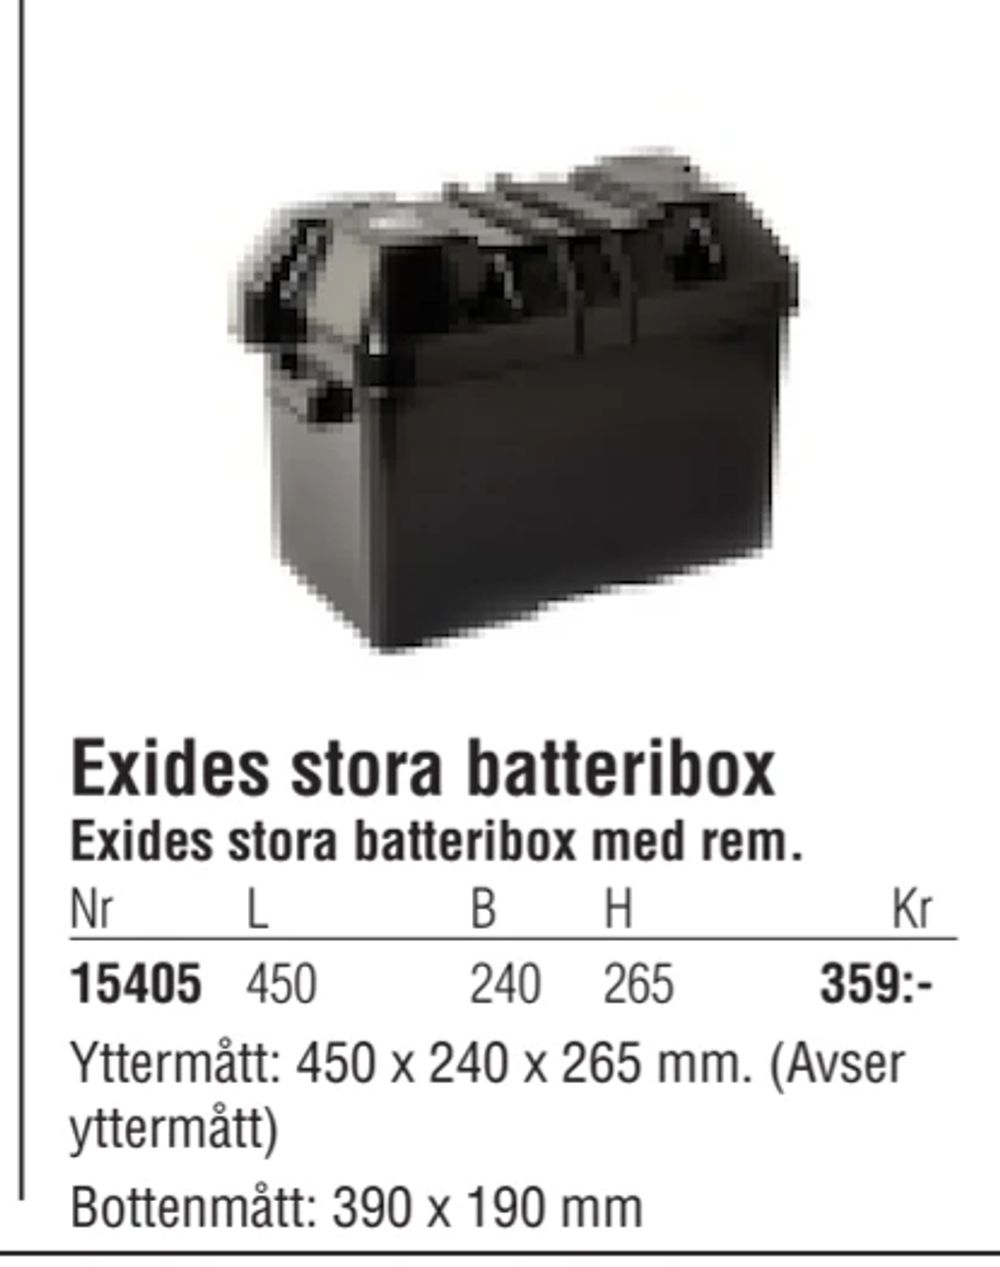 Erbjudanden på Exides stora batteribox från Erlandsons Brygga för 359 kr